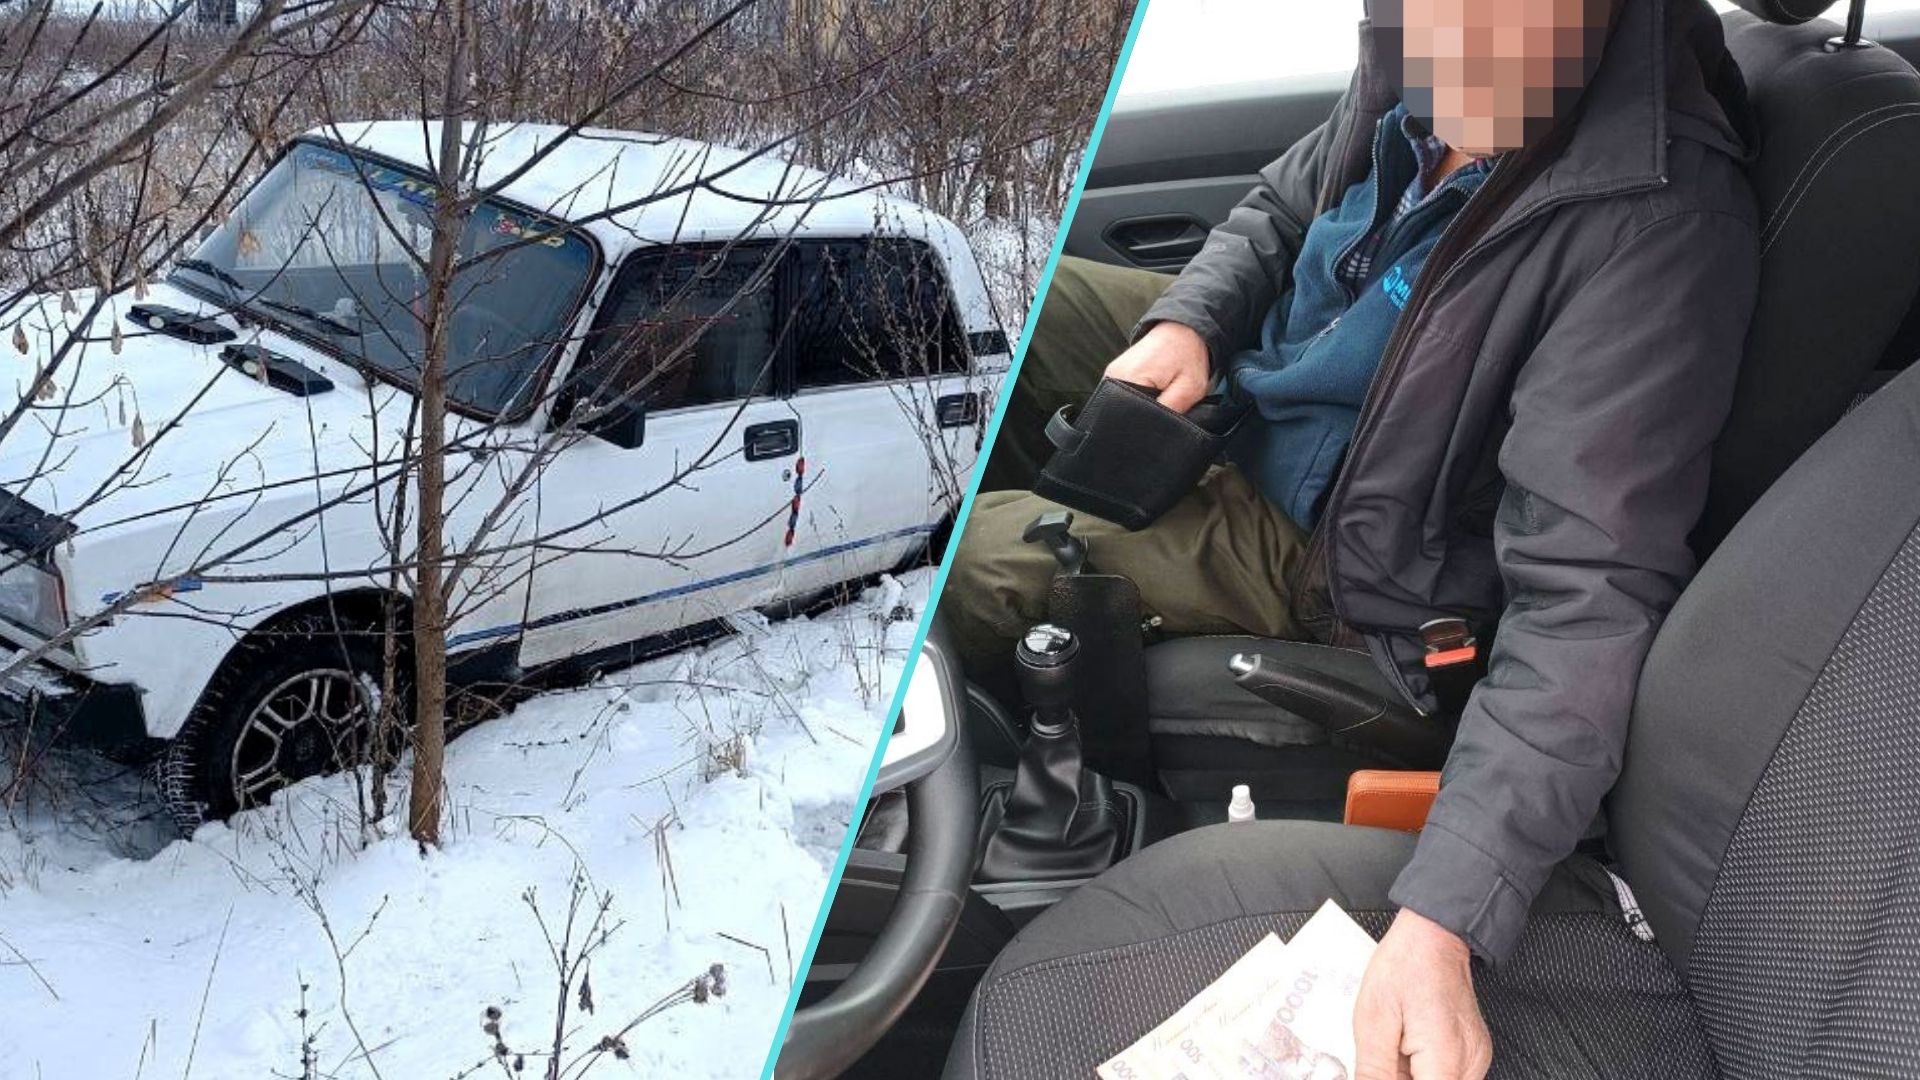 Автомобіль «ВАЗ 2105» у чагарниках засніженого узбіччя у селі Дядьковичі, що на Рівненщині, помітили вчора, 8 грудня, поліцейські офіцери цієї ж громади.